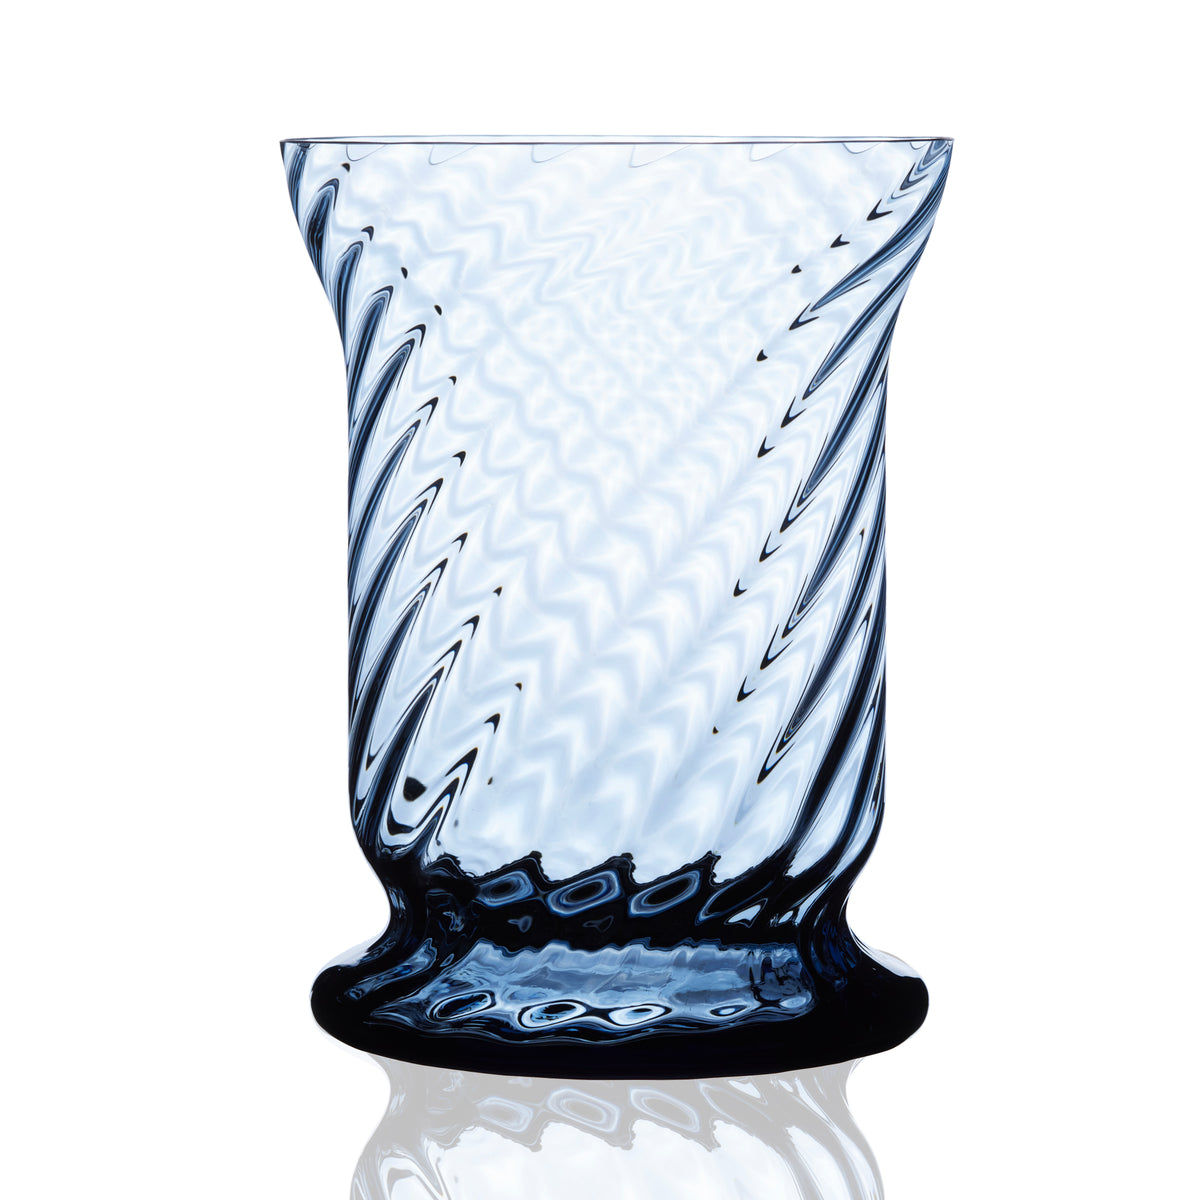 Quinn Ocean Blue Hurricane Candle Lantern in Mouthblown crystal from Caskata